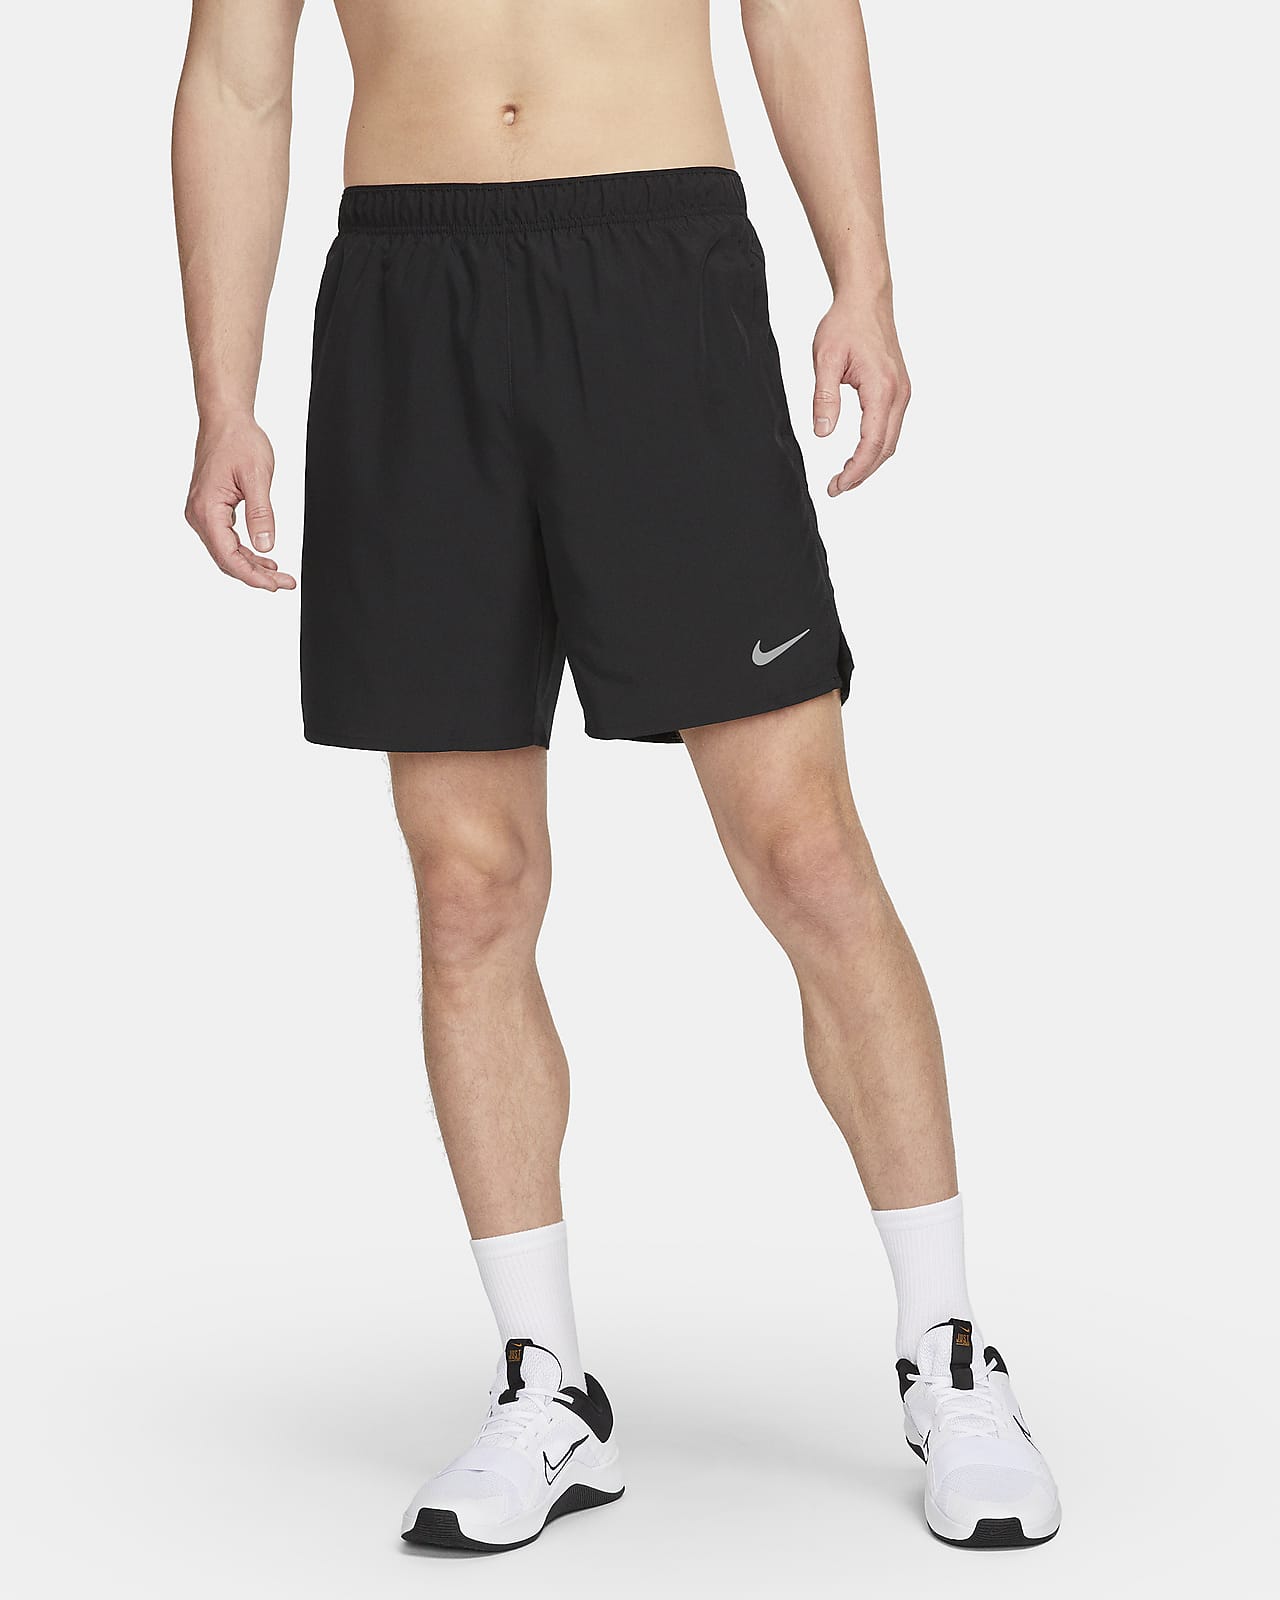 Calções de running forrados com slips de 18 cm Dri-FIT Nike Challenger para homem